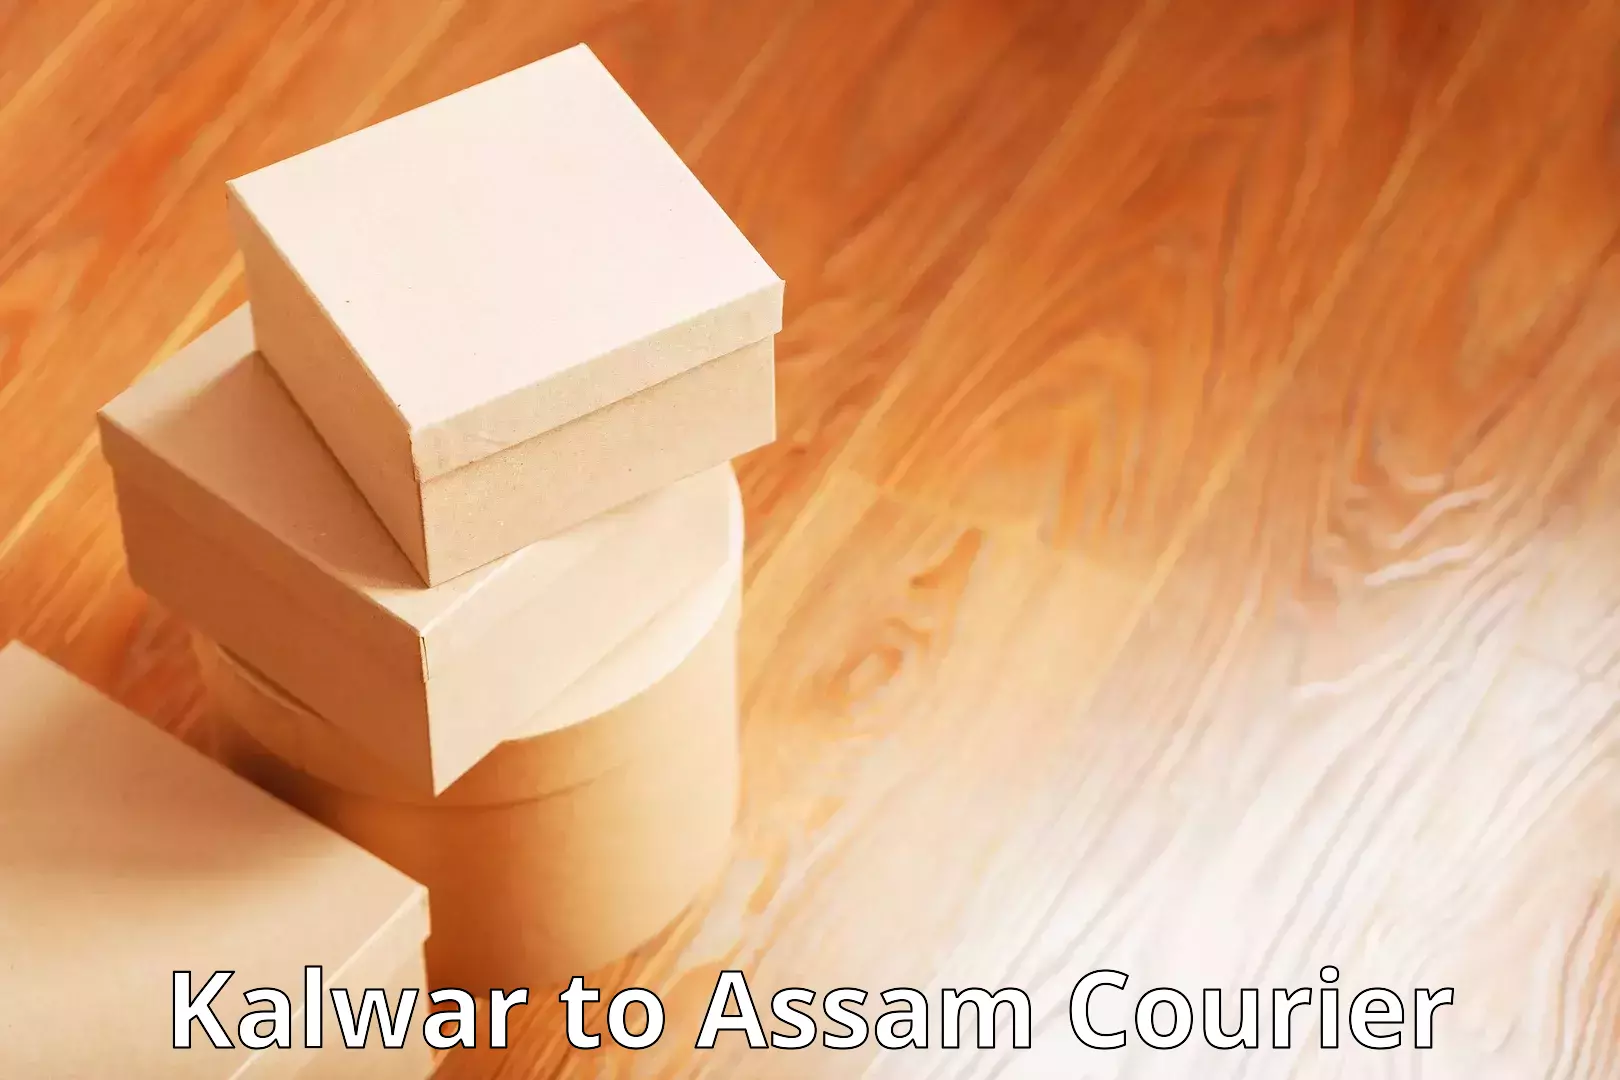 Online shipping calculator Kalwar to Assam